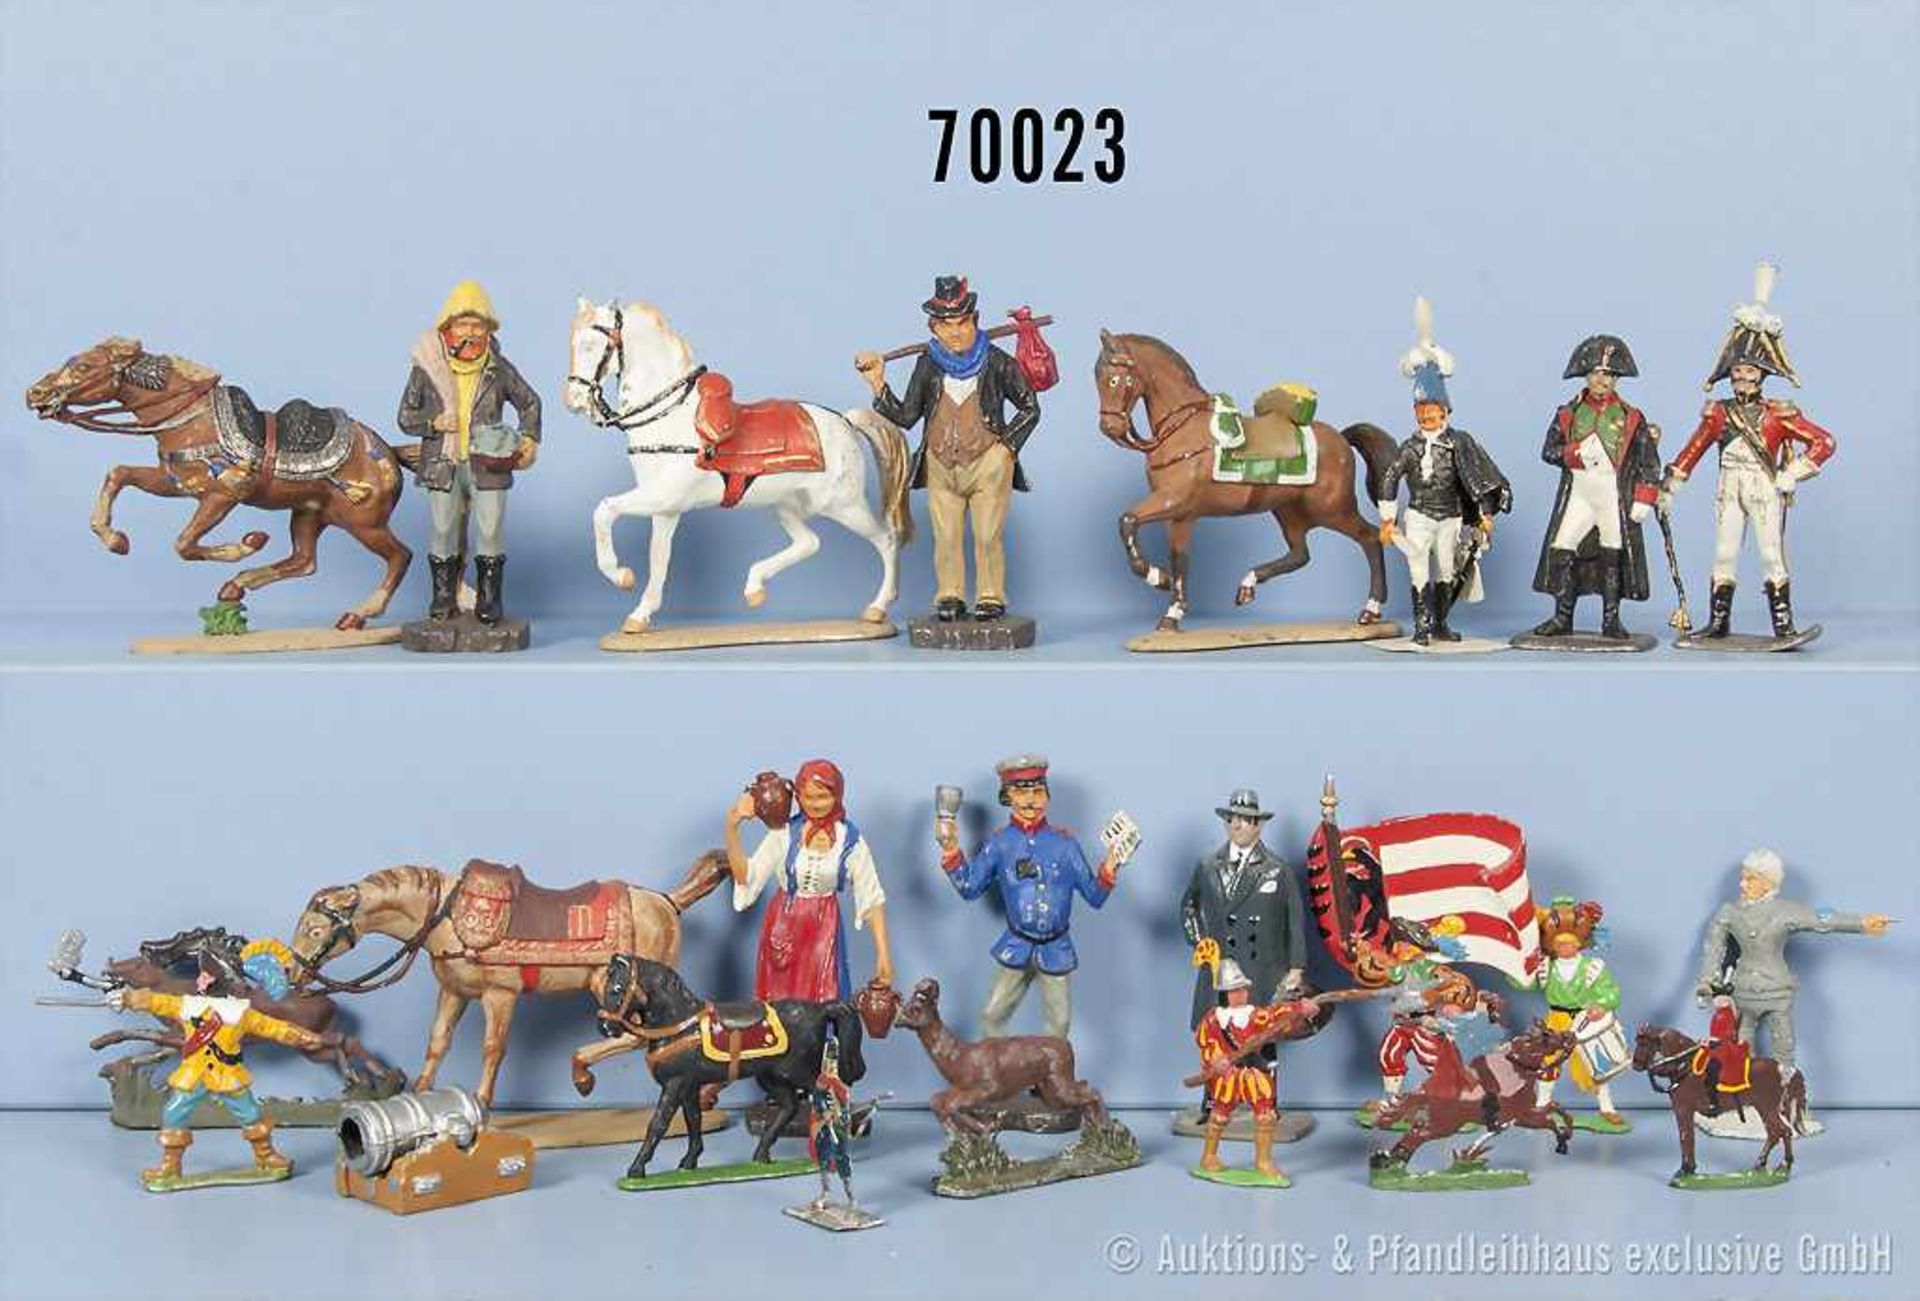 großes Konv. Zinnfiguren, dabei Landsknechte, Tiere, Pferde, napoleonische Soldaten usw., halb-